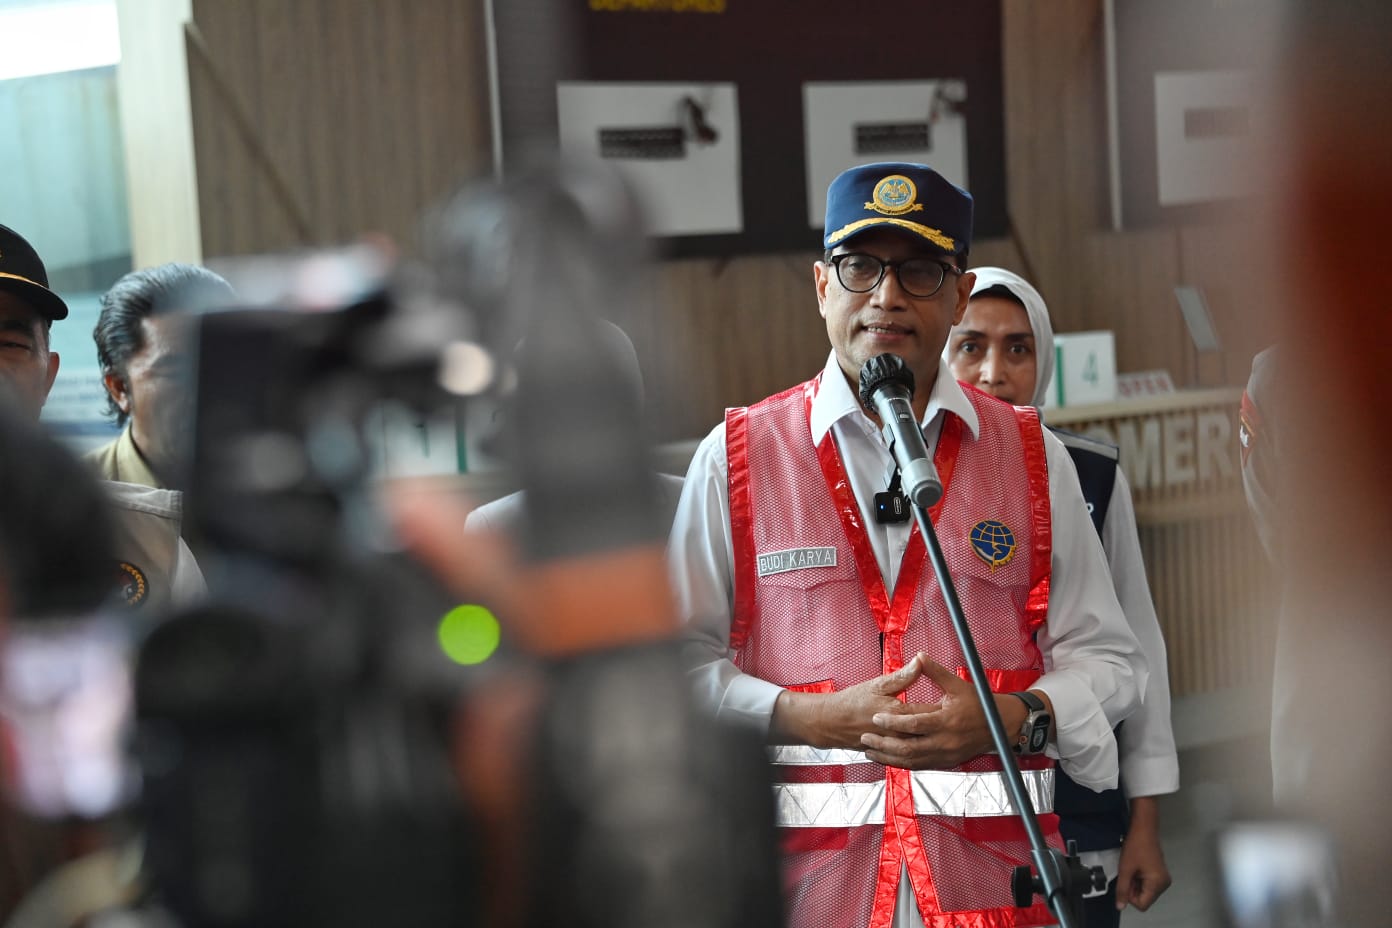 Hadir di KPK, Menhub Budi Karya Diperiksa Soal Kasus Suap Ditjen Kereta Api 